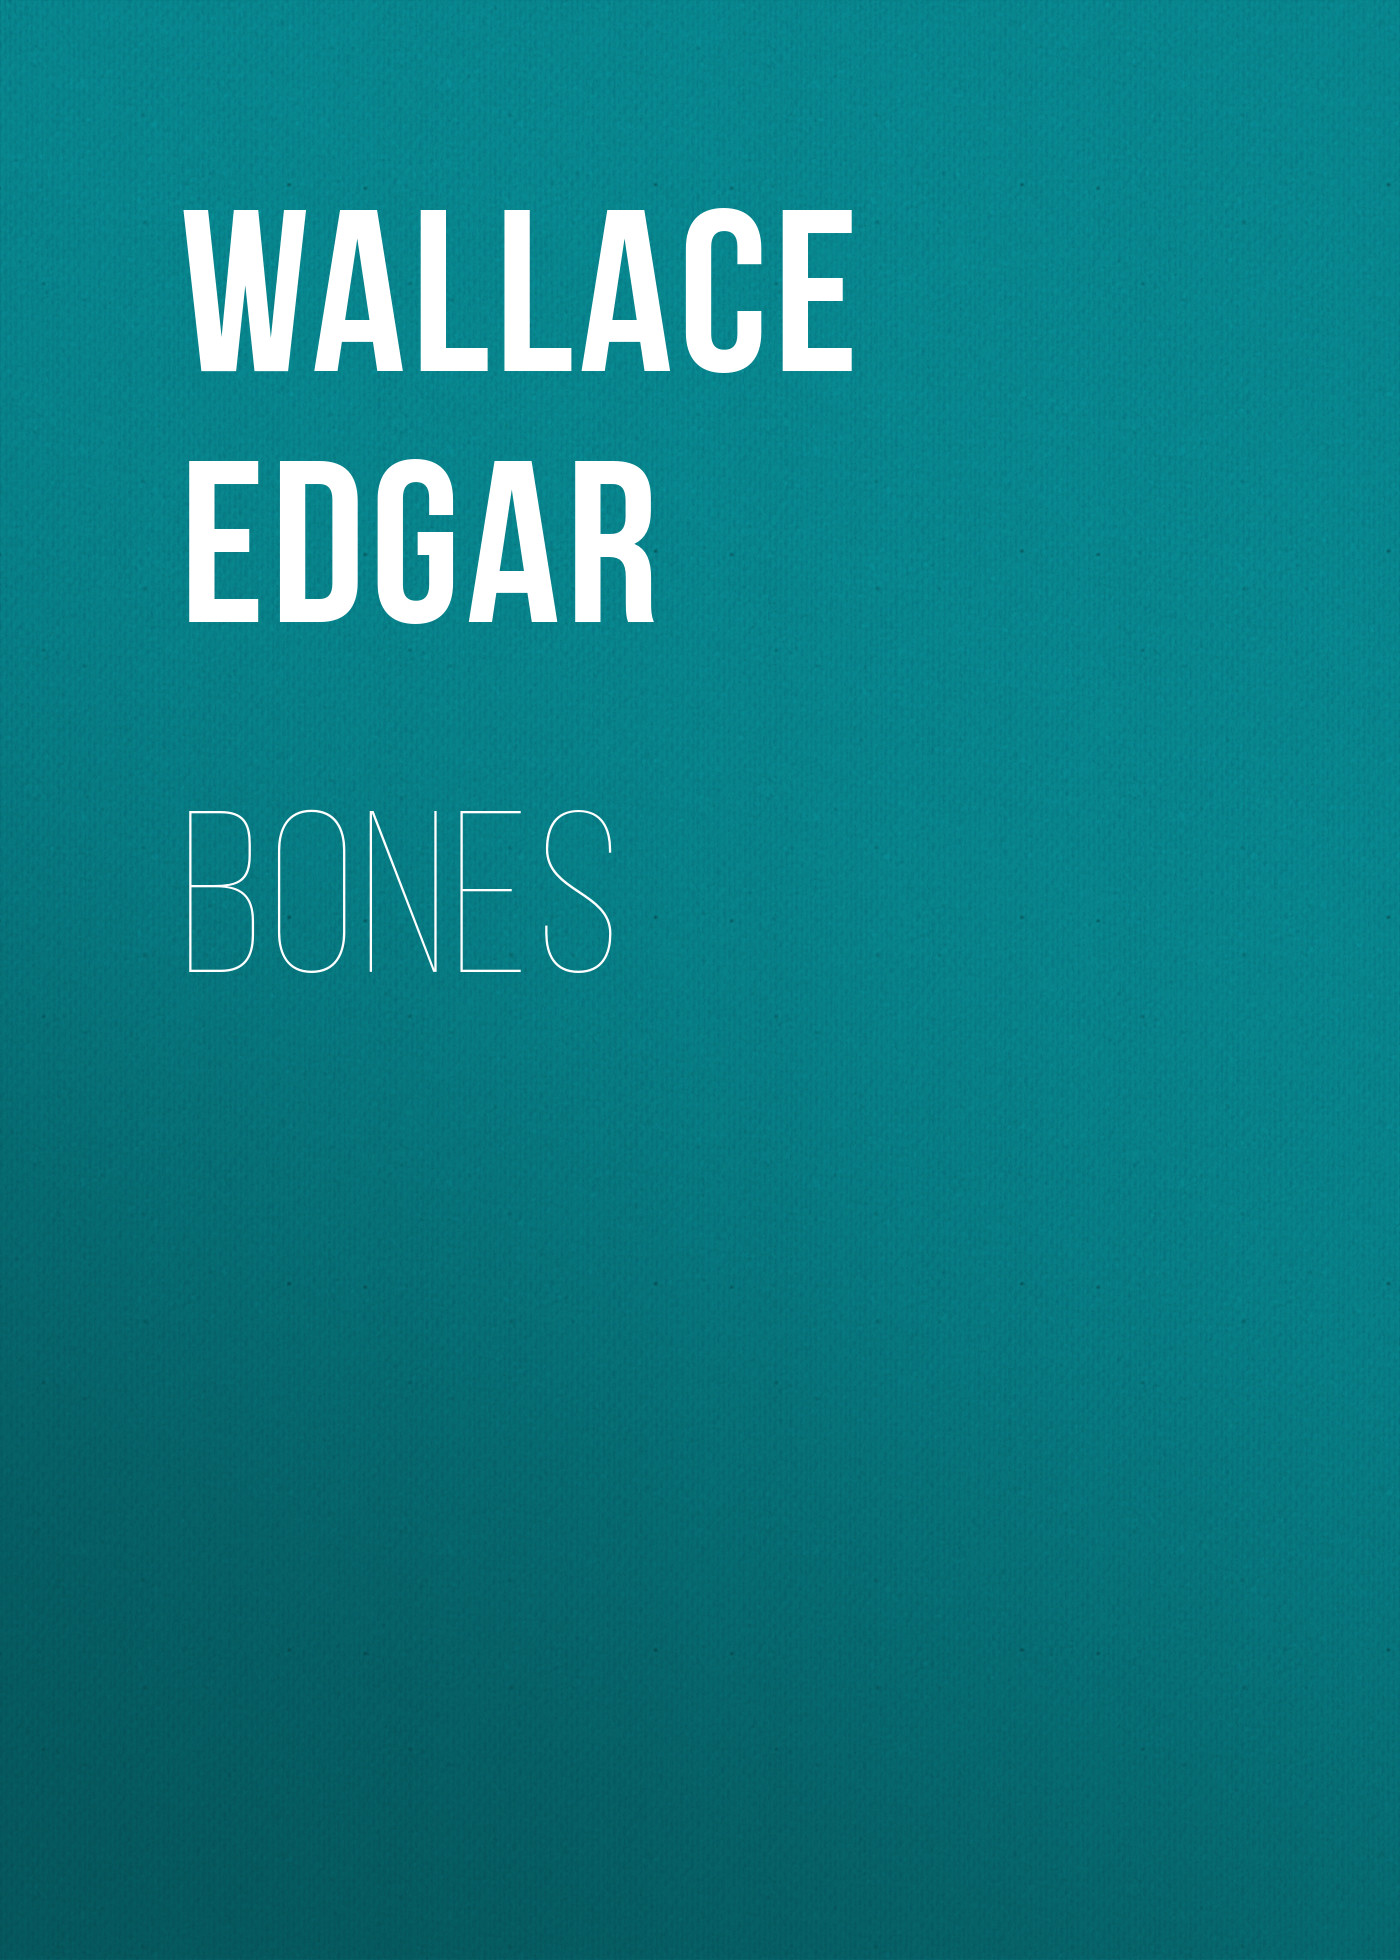 Скачать Bones - Wallace Edgar